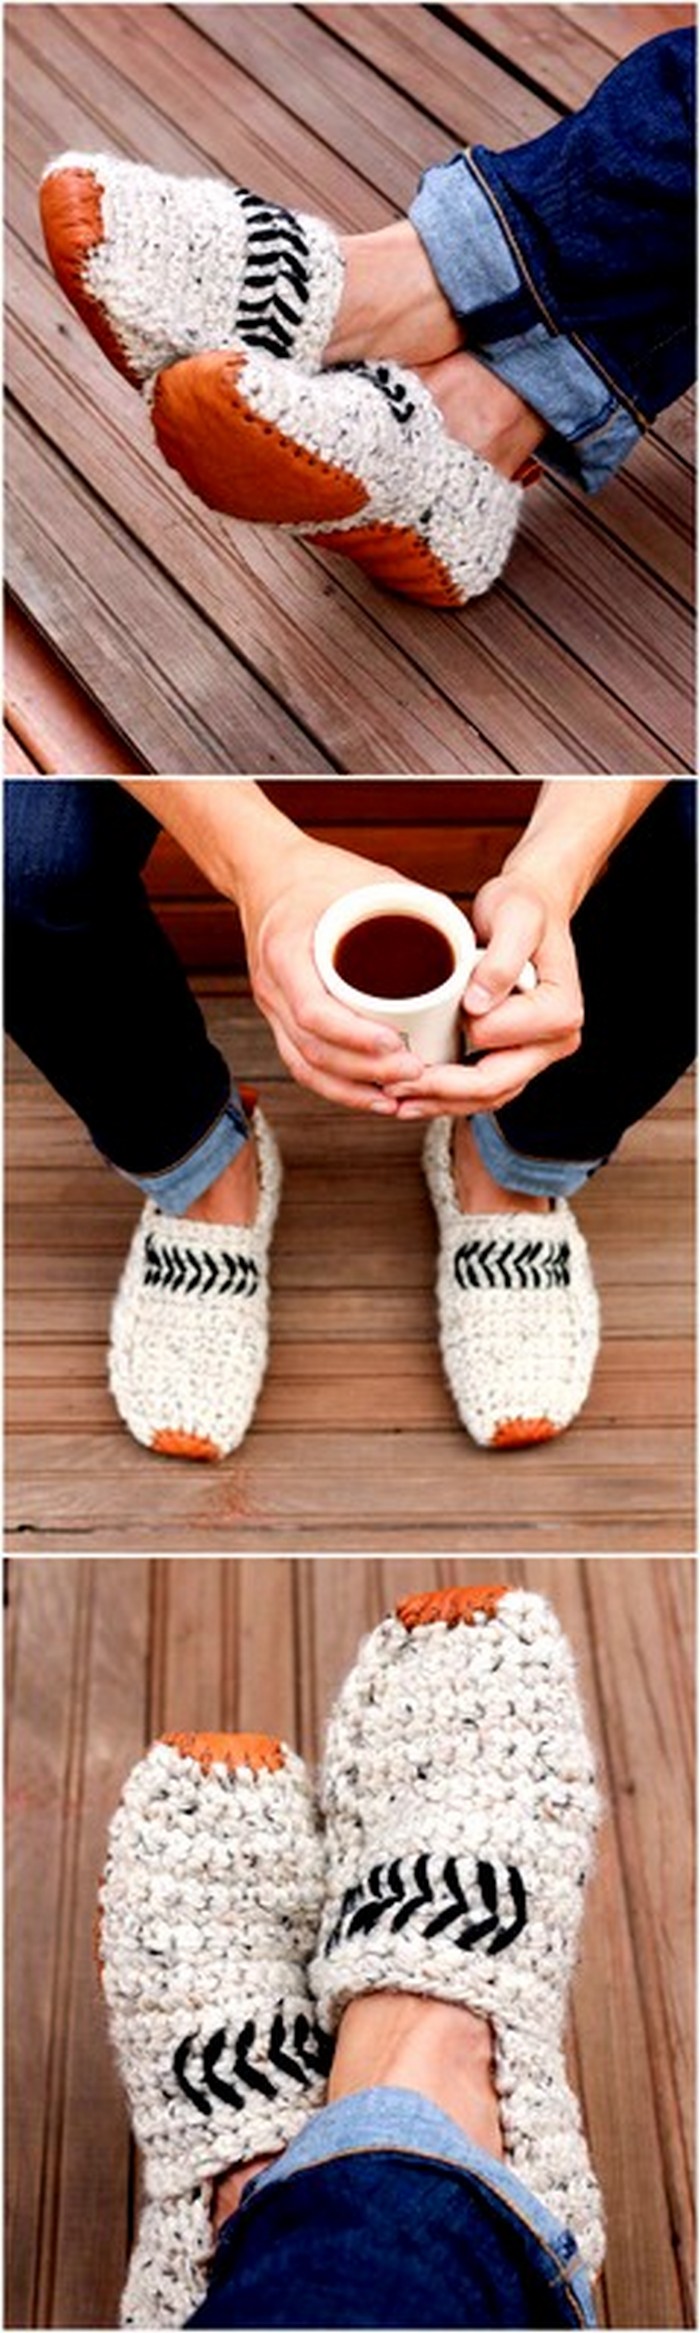 fabulous crochet shoes idea